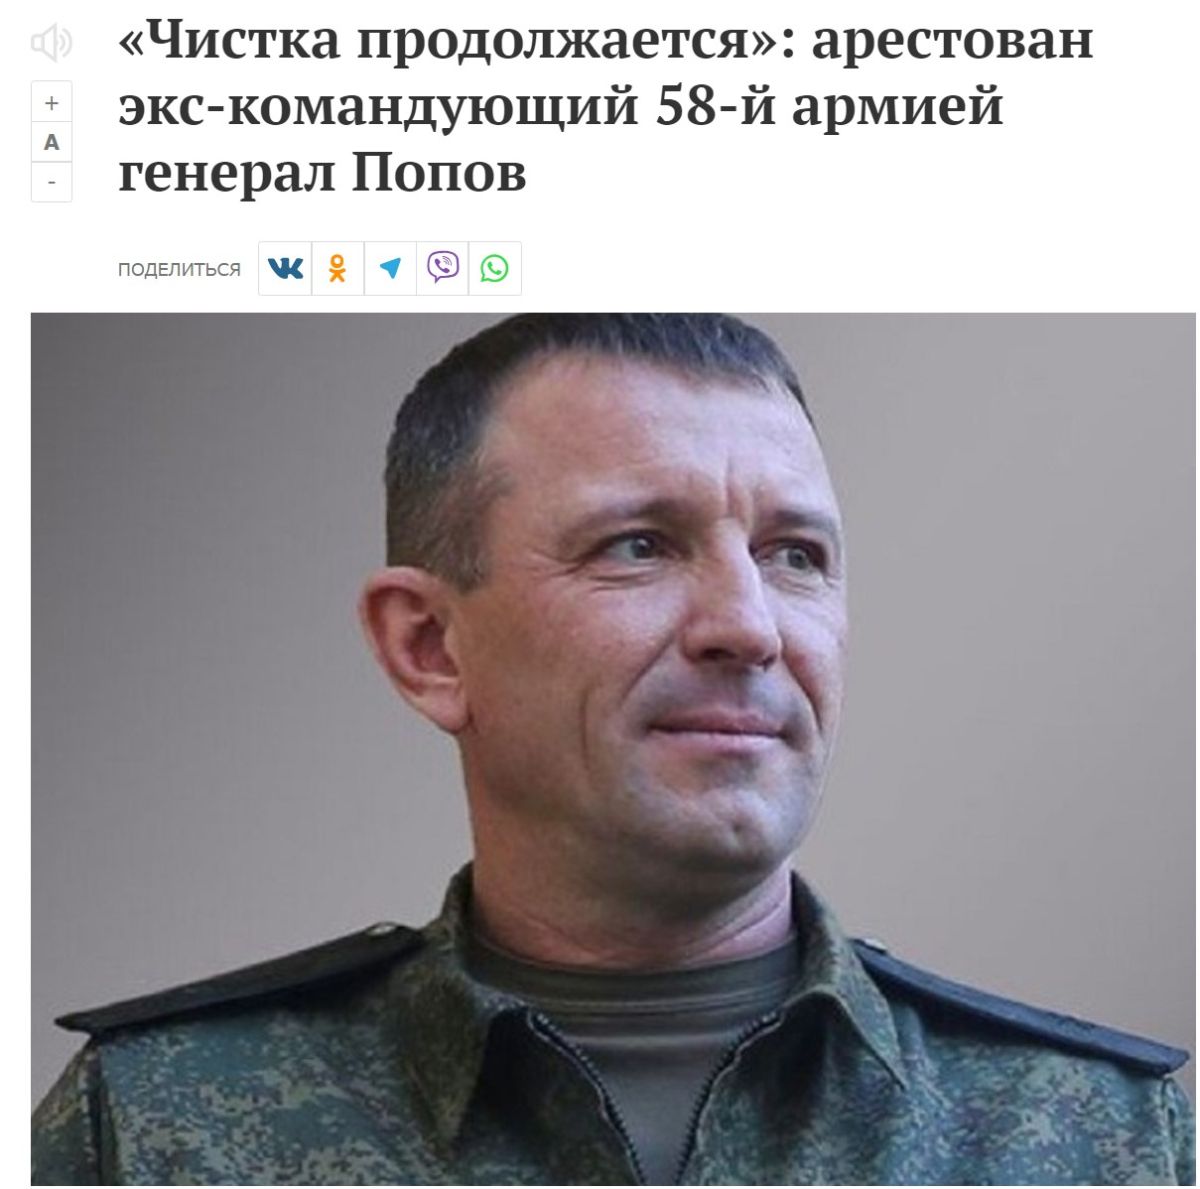 Івана Попова, екс-командувача 58-ої армії рф, яка базувалася в Бердянську, затримали за підозрою в шахрайстві